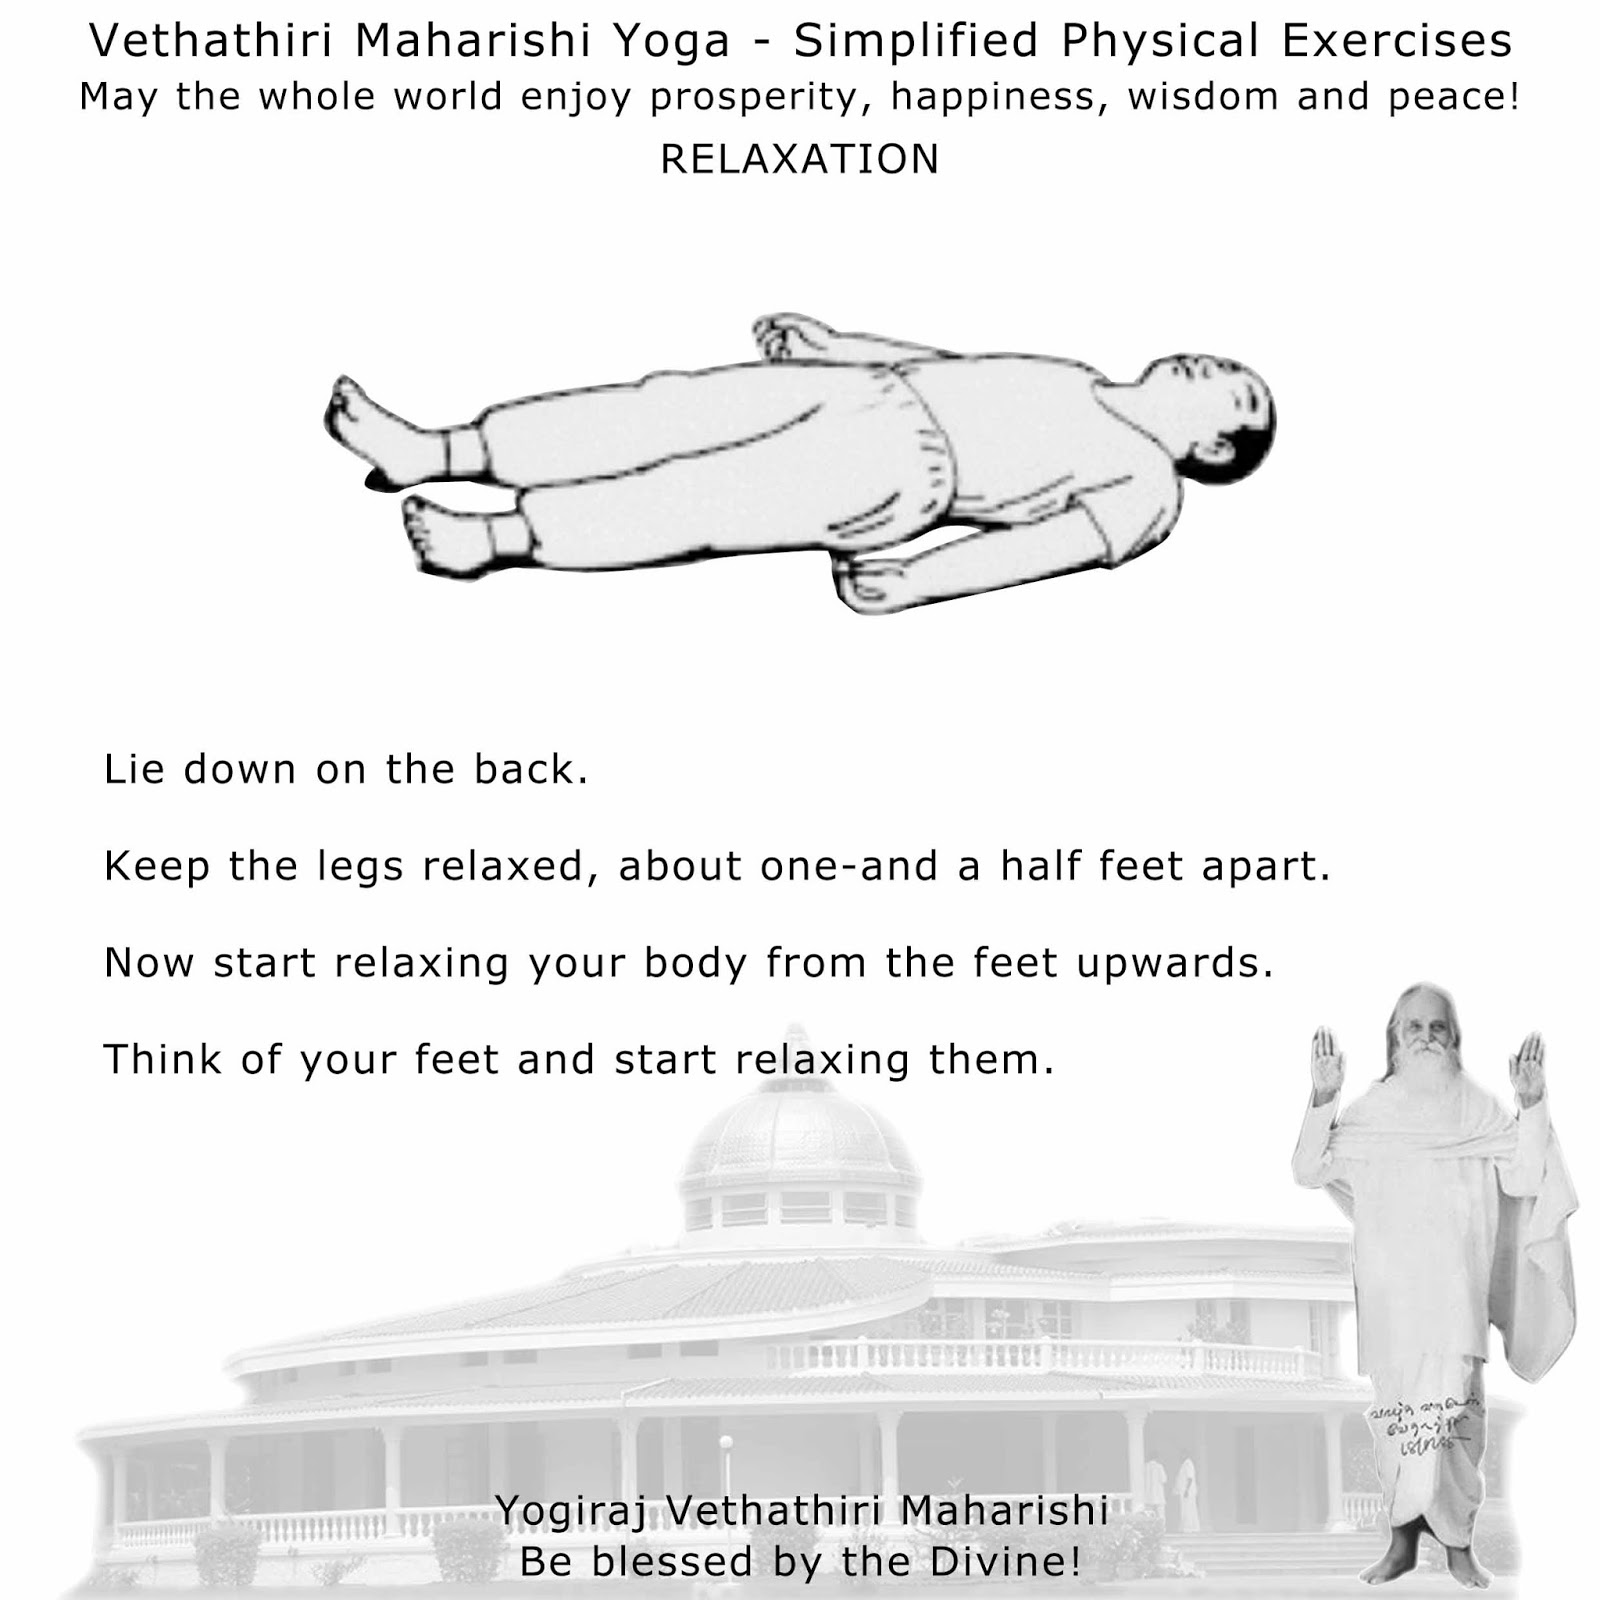 Vethathiri maharishi yoga